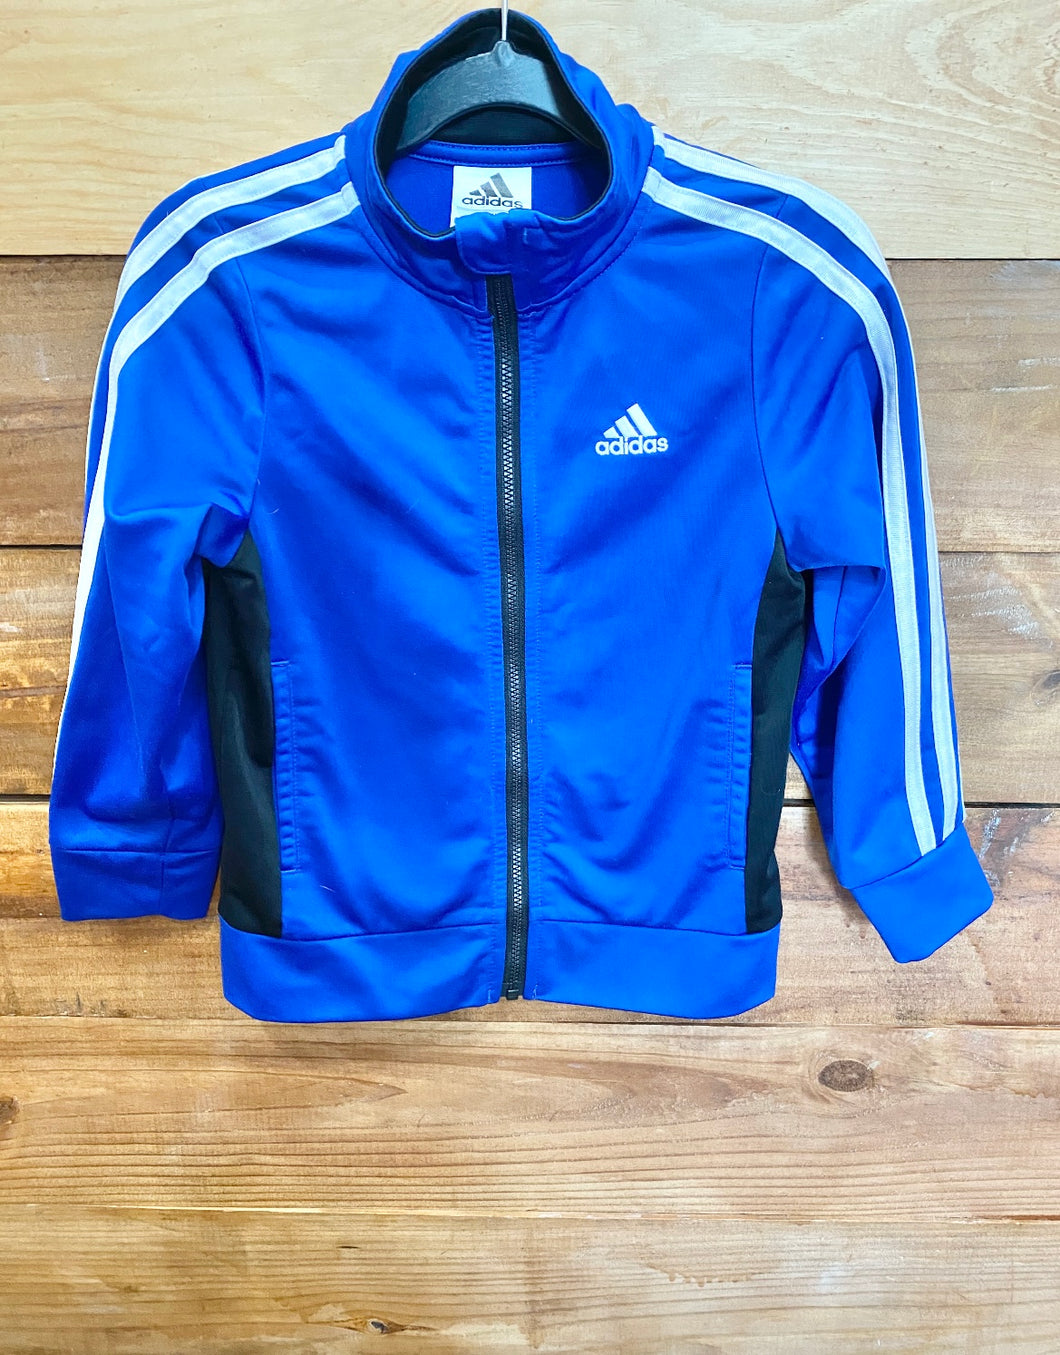 Adidas Blue Jacket Size 4T